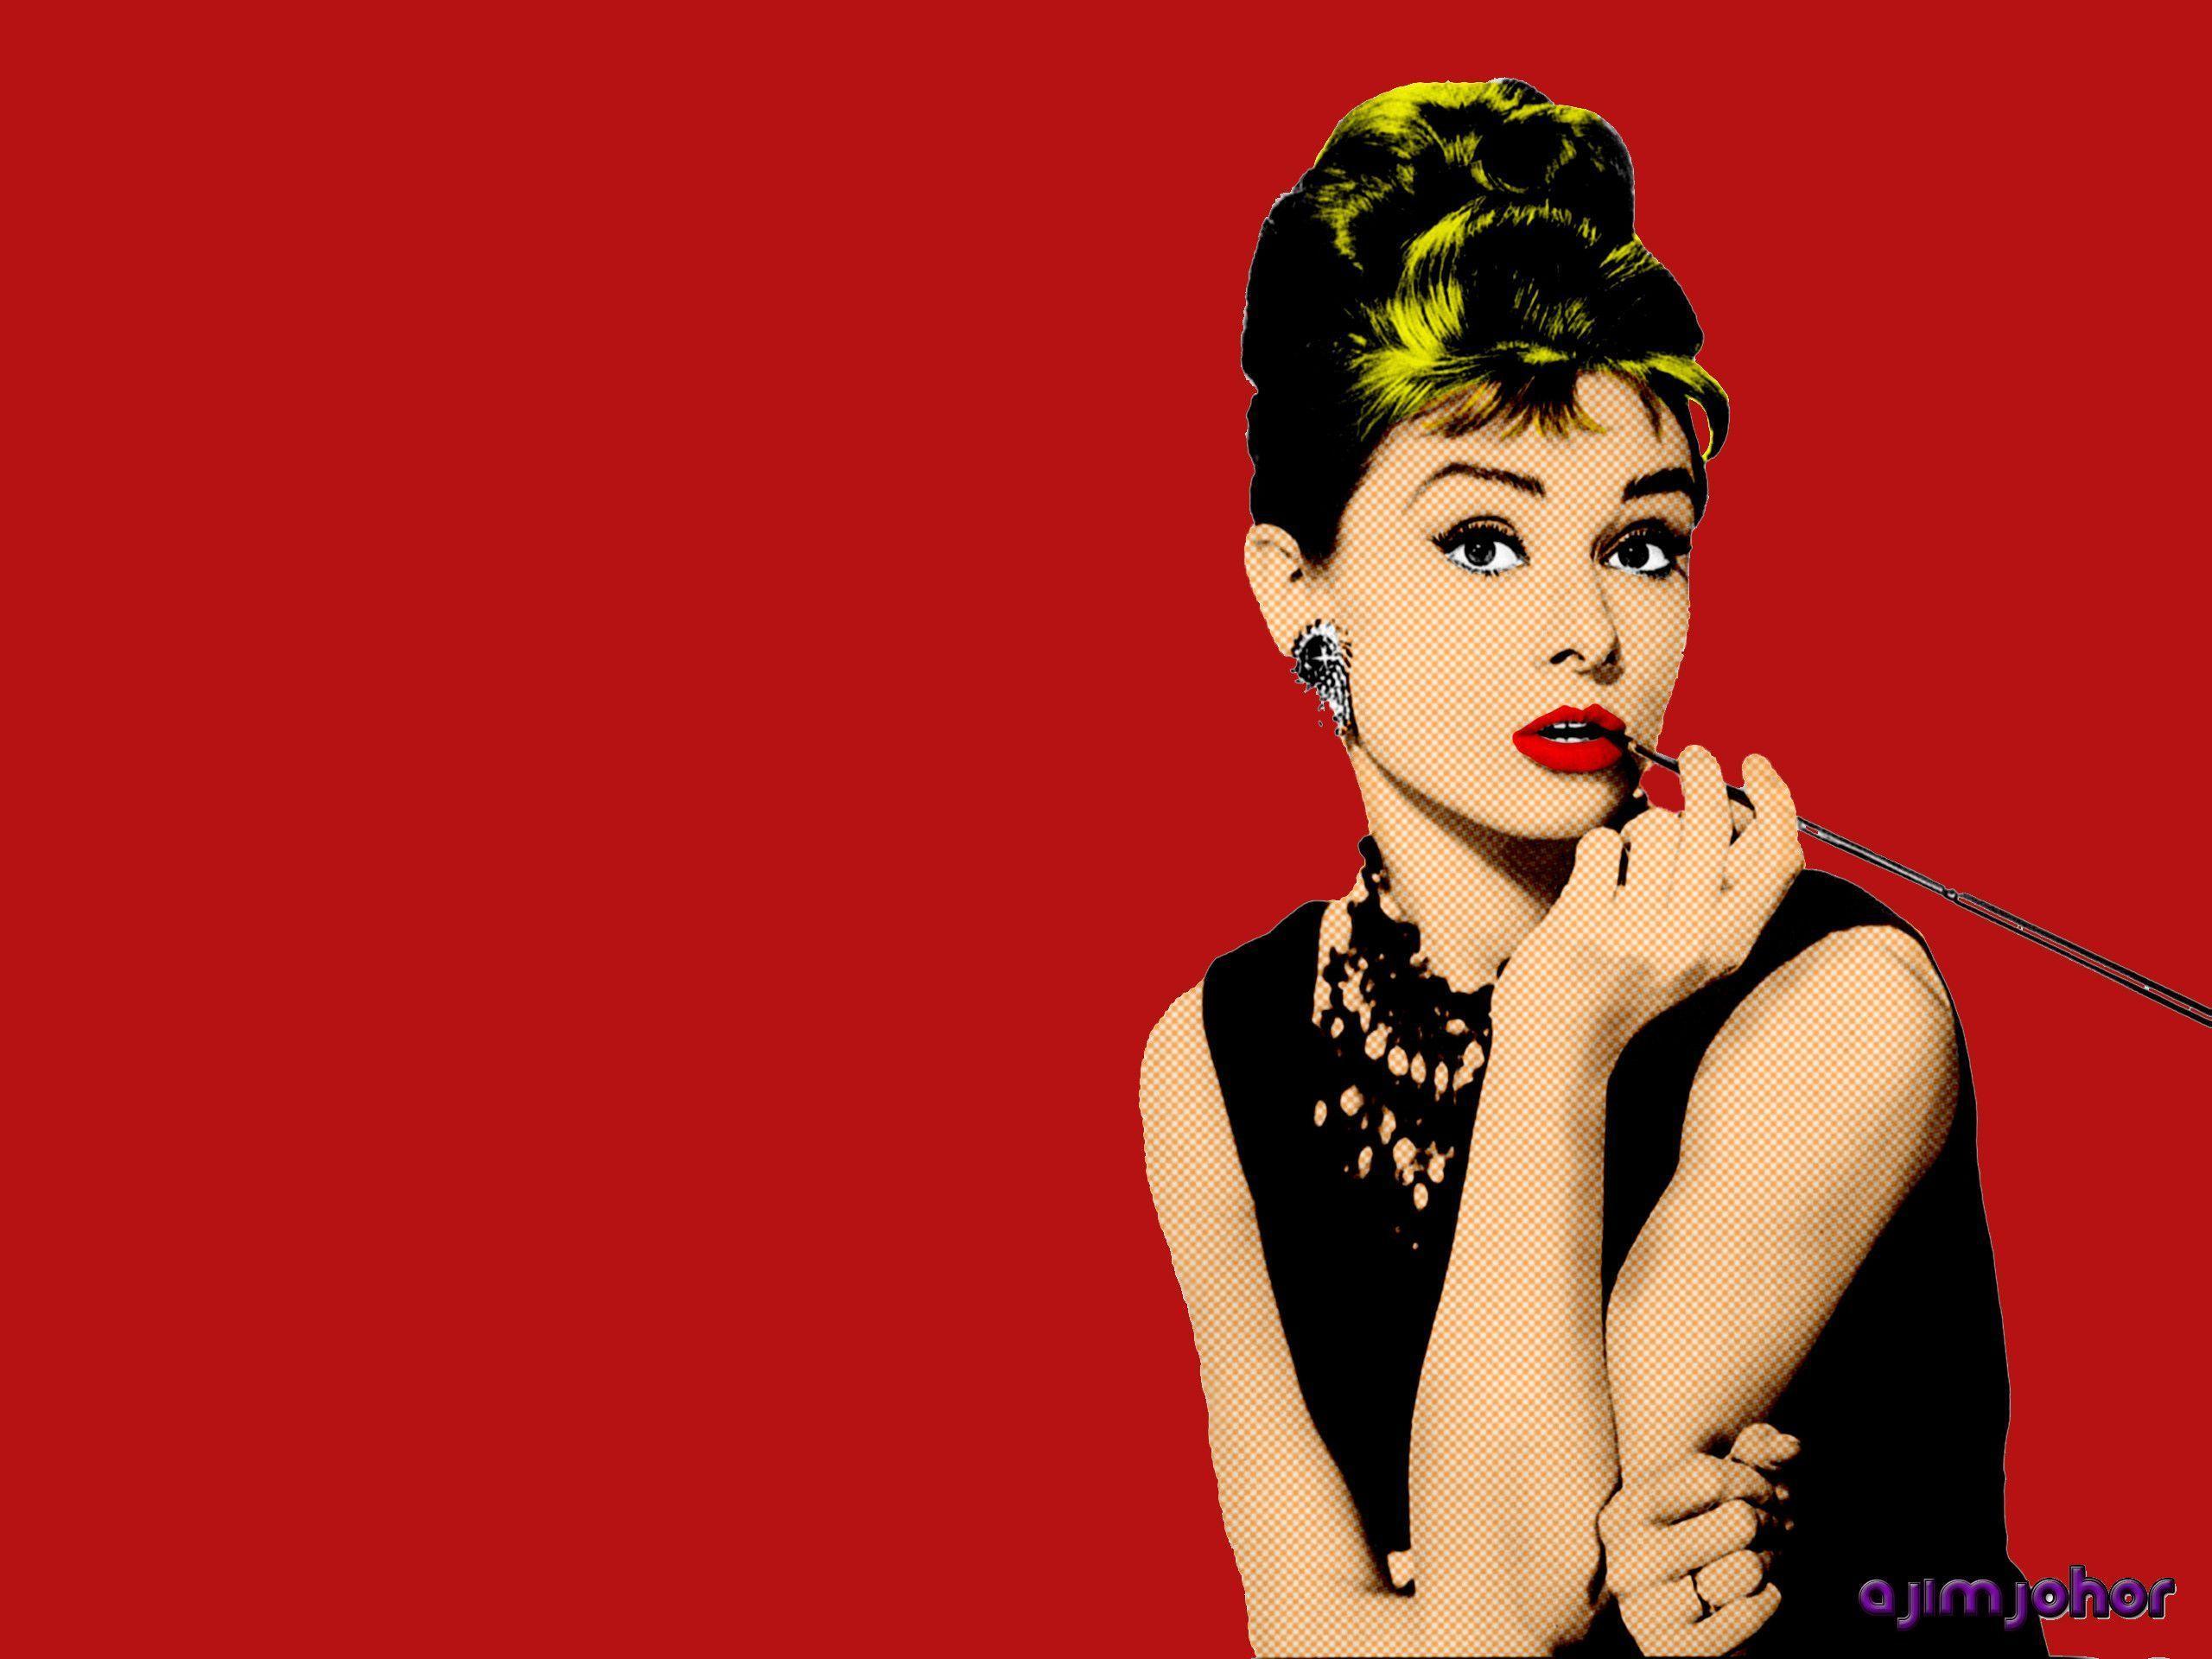 Fonds d&;écran Audrey Hepburn, tous les wallpaper Audrey Hepburn